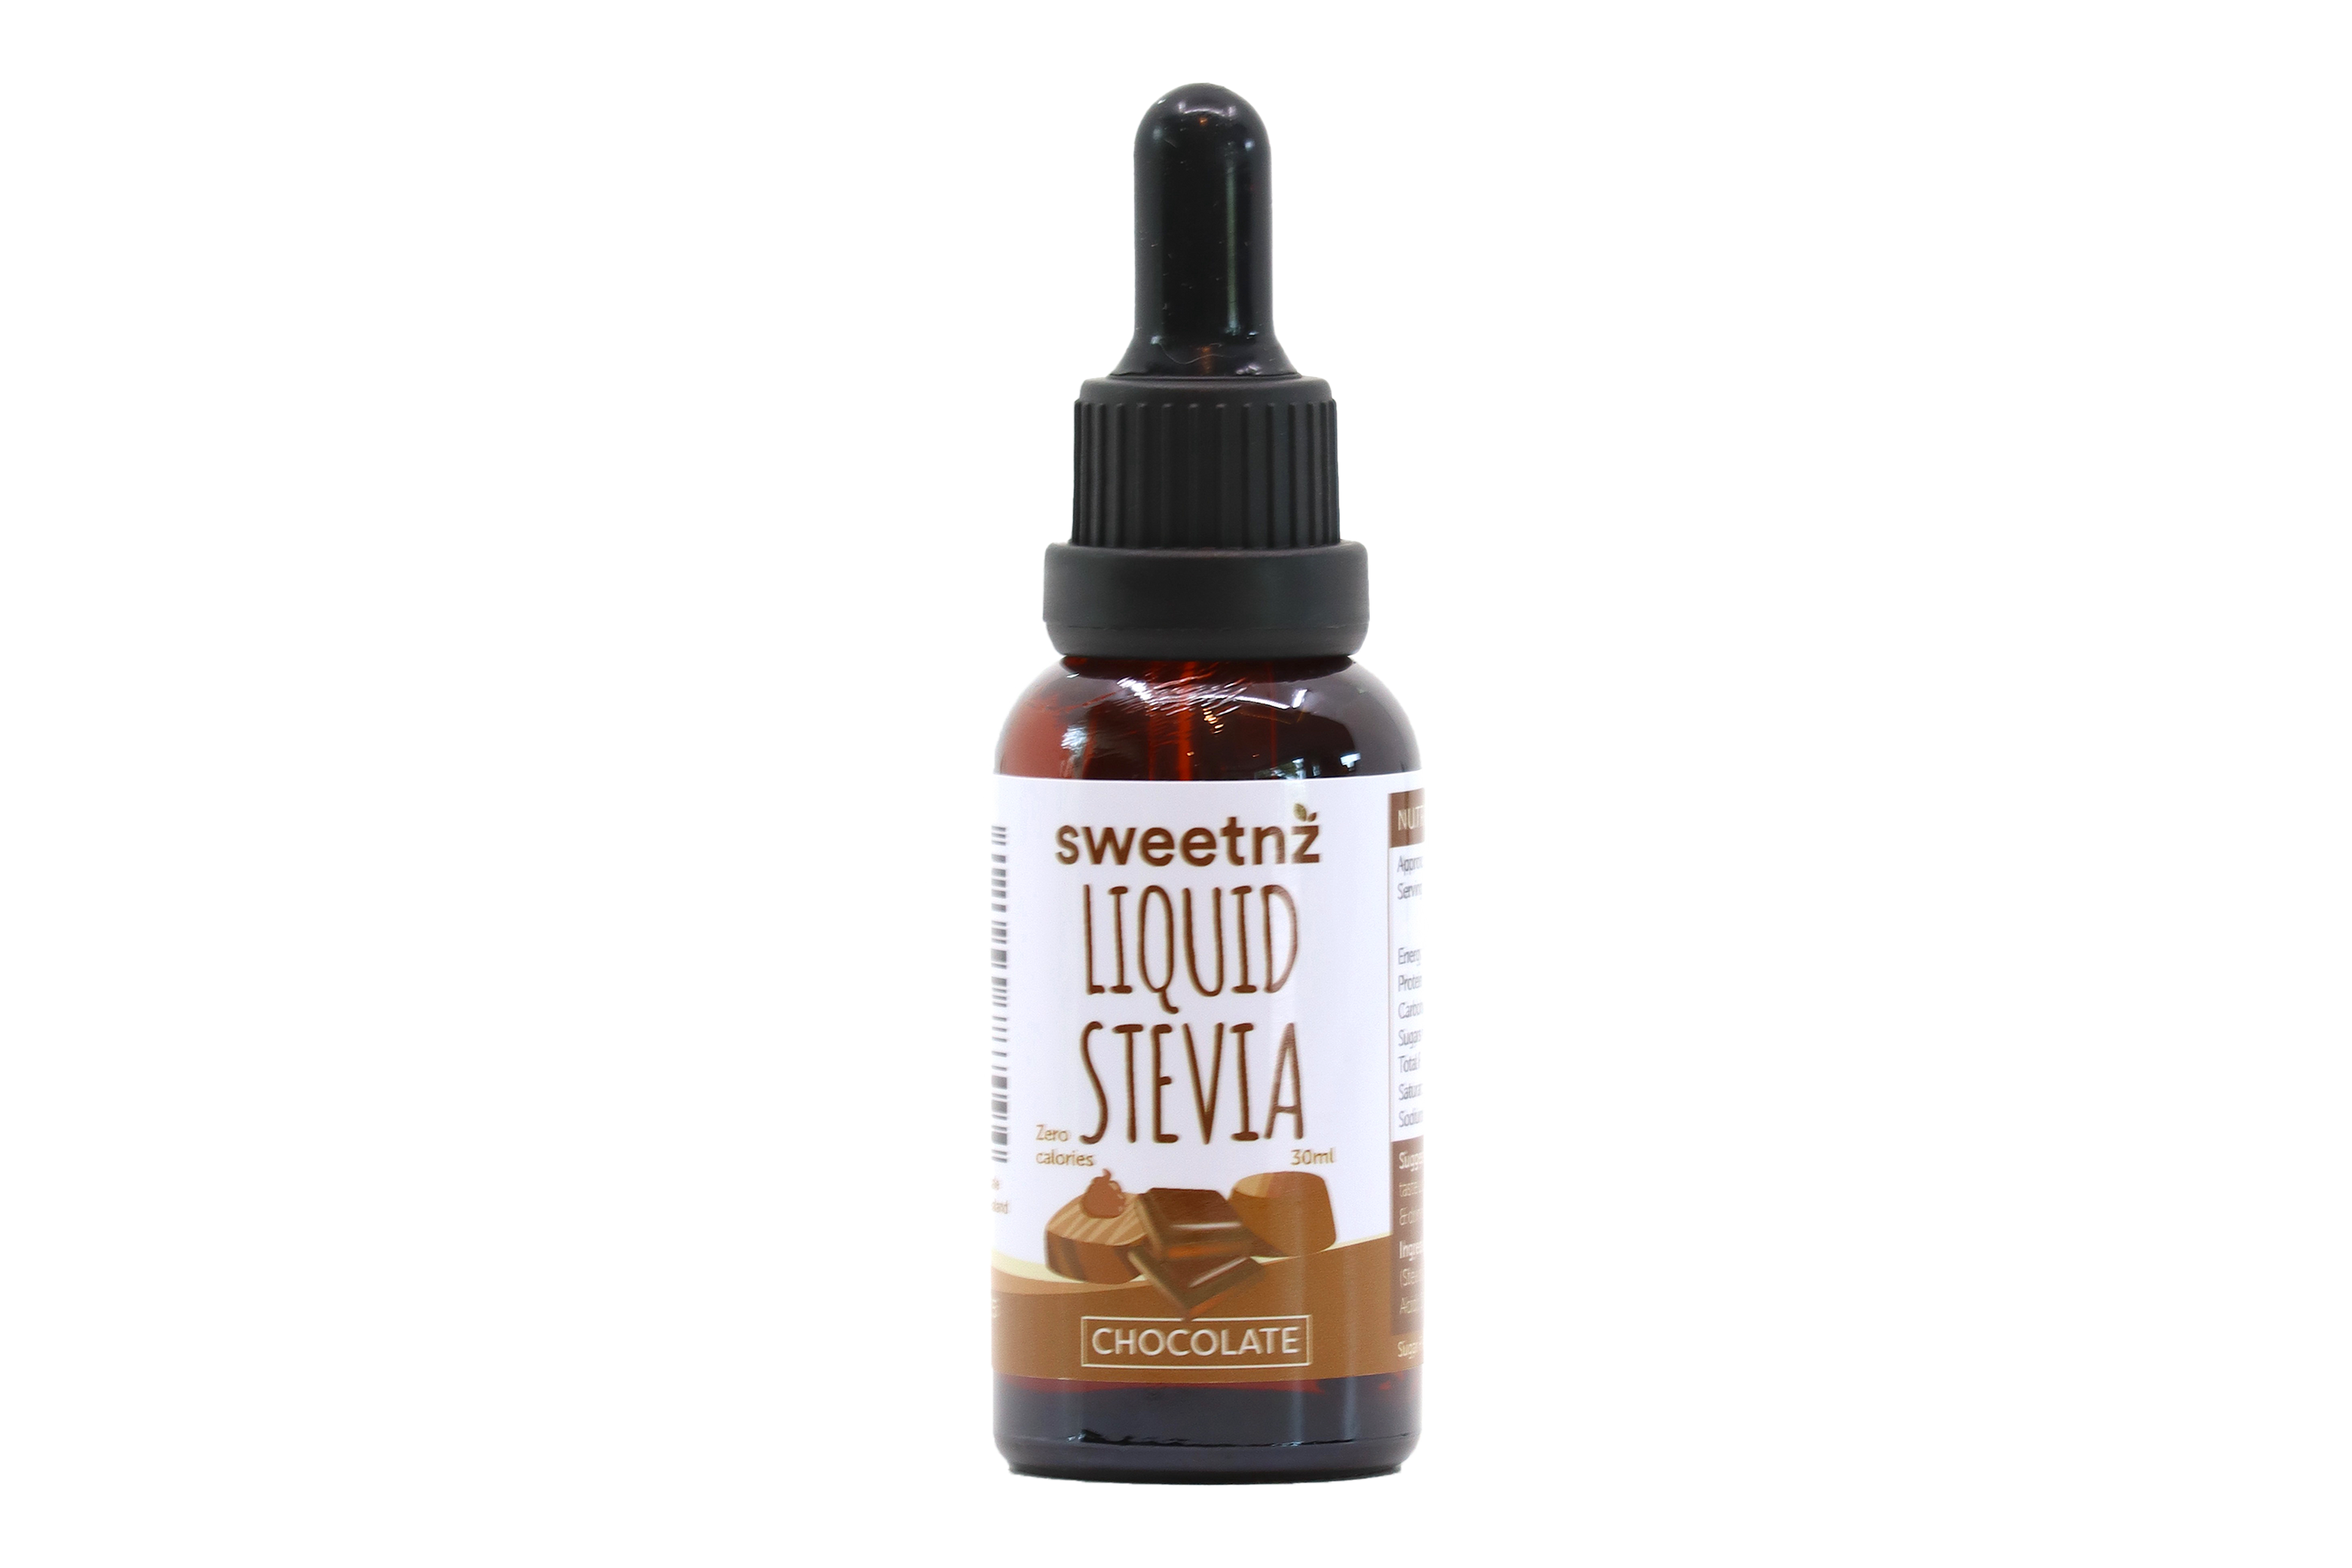 Liquid Stevia - Chocolate flavour, 30ml